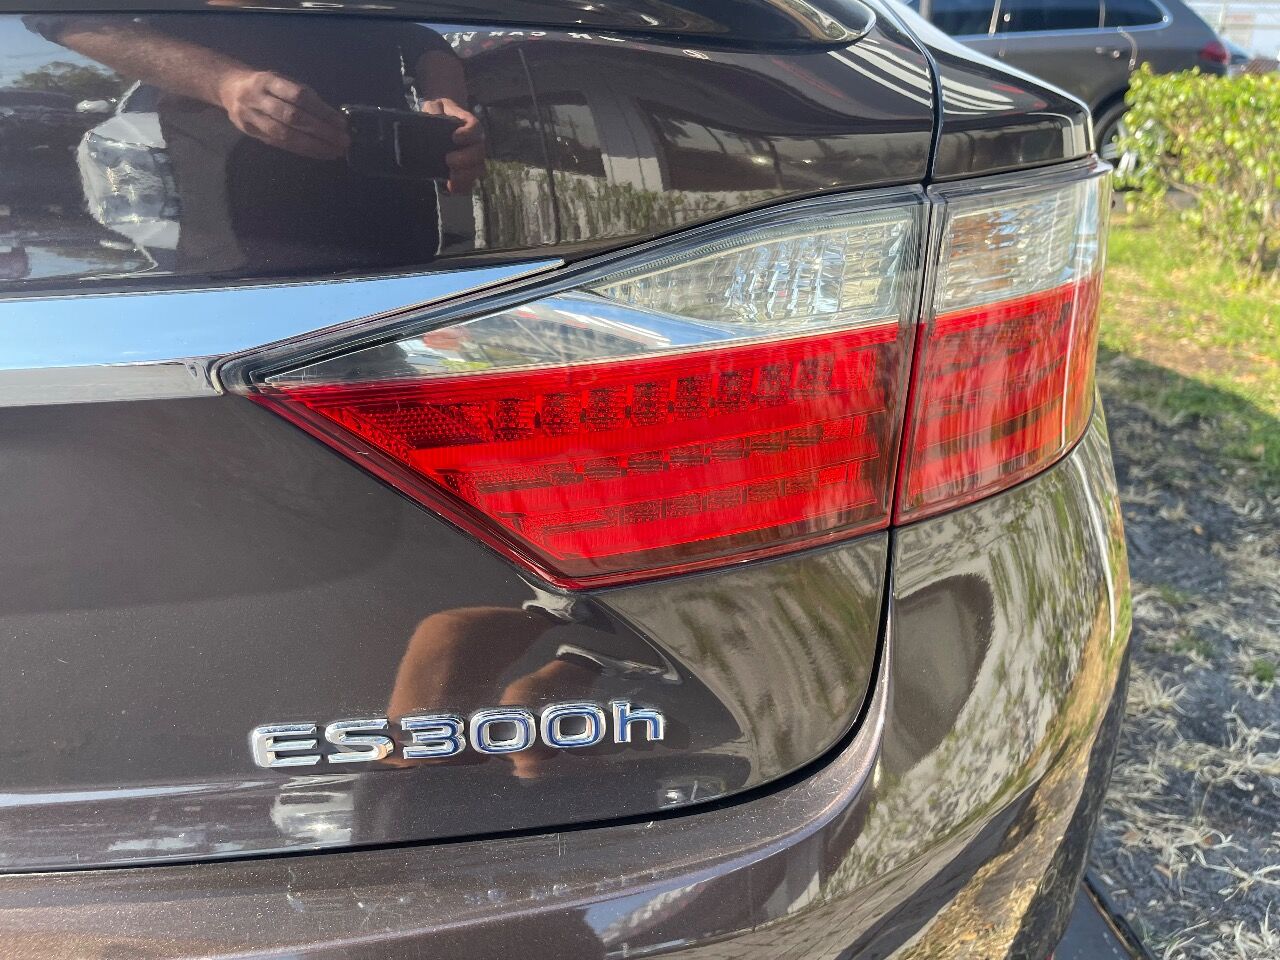 2013 Lexus E-Series Sedan - $12,900